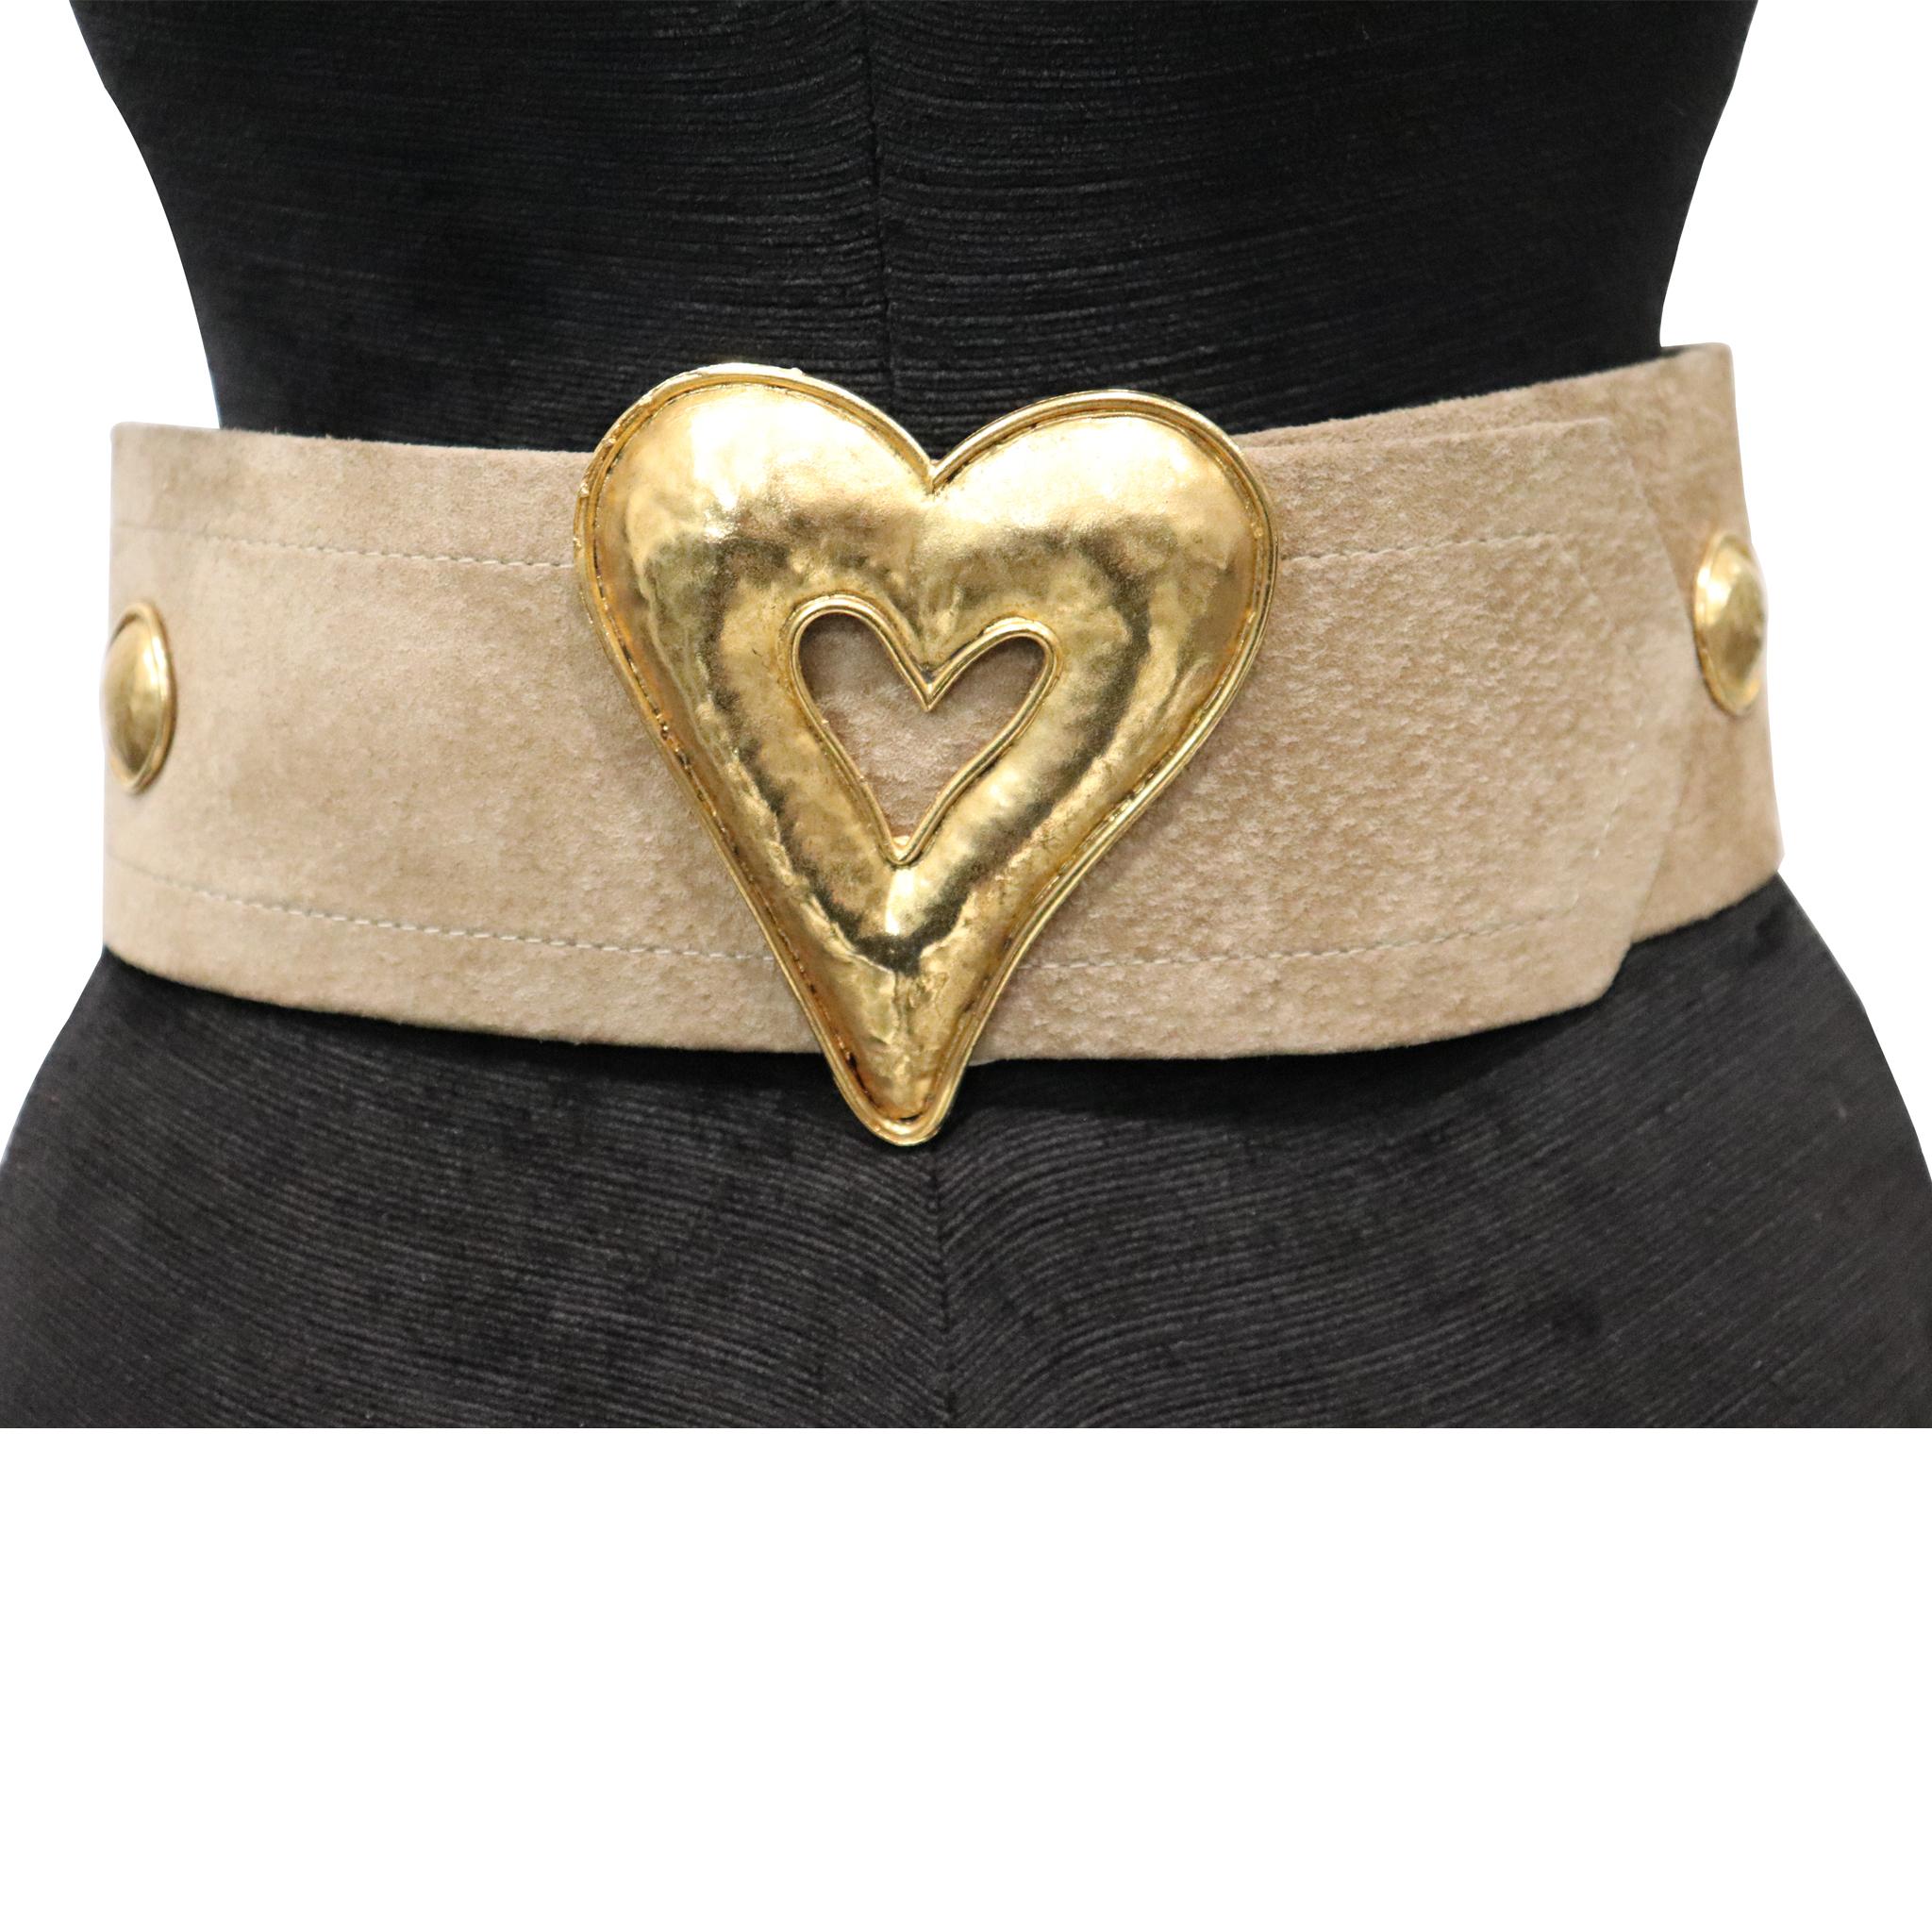 Edouard Rambaud Pour Portanera Paris Beige Suède Belt W/ Gold Metal Heart. Vintage Belt from 1990s in excellent condition 

Measurements: 
Longest length - 27.5 inches 
Shortest length - 26 inches 
Height - 3 inches 